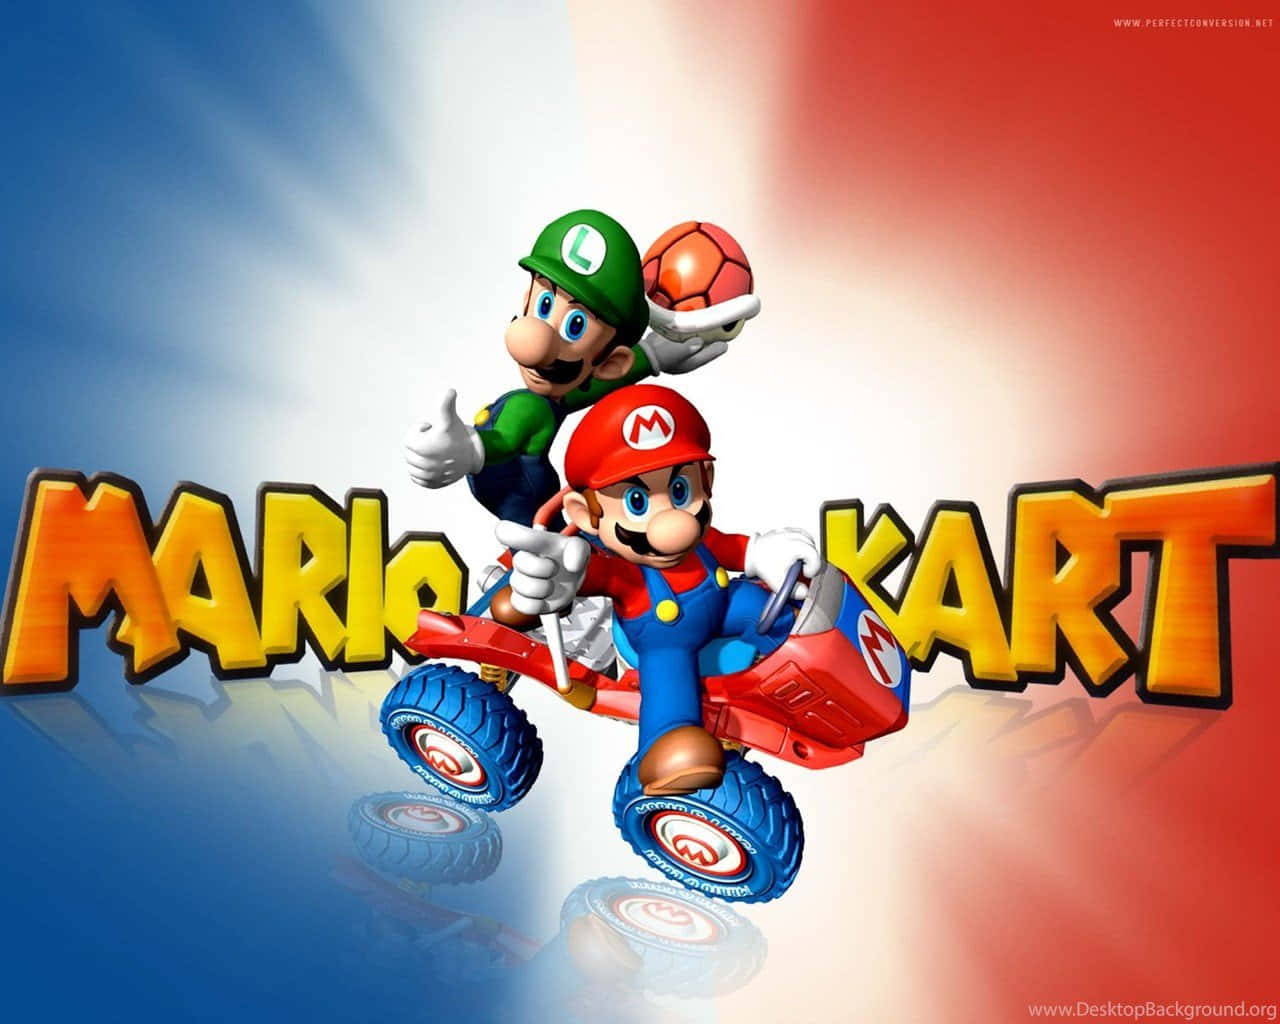 Recorreel Reino Champiñón En Karts Coloridos En Mario Kart.